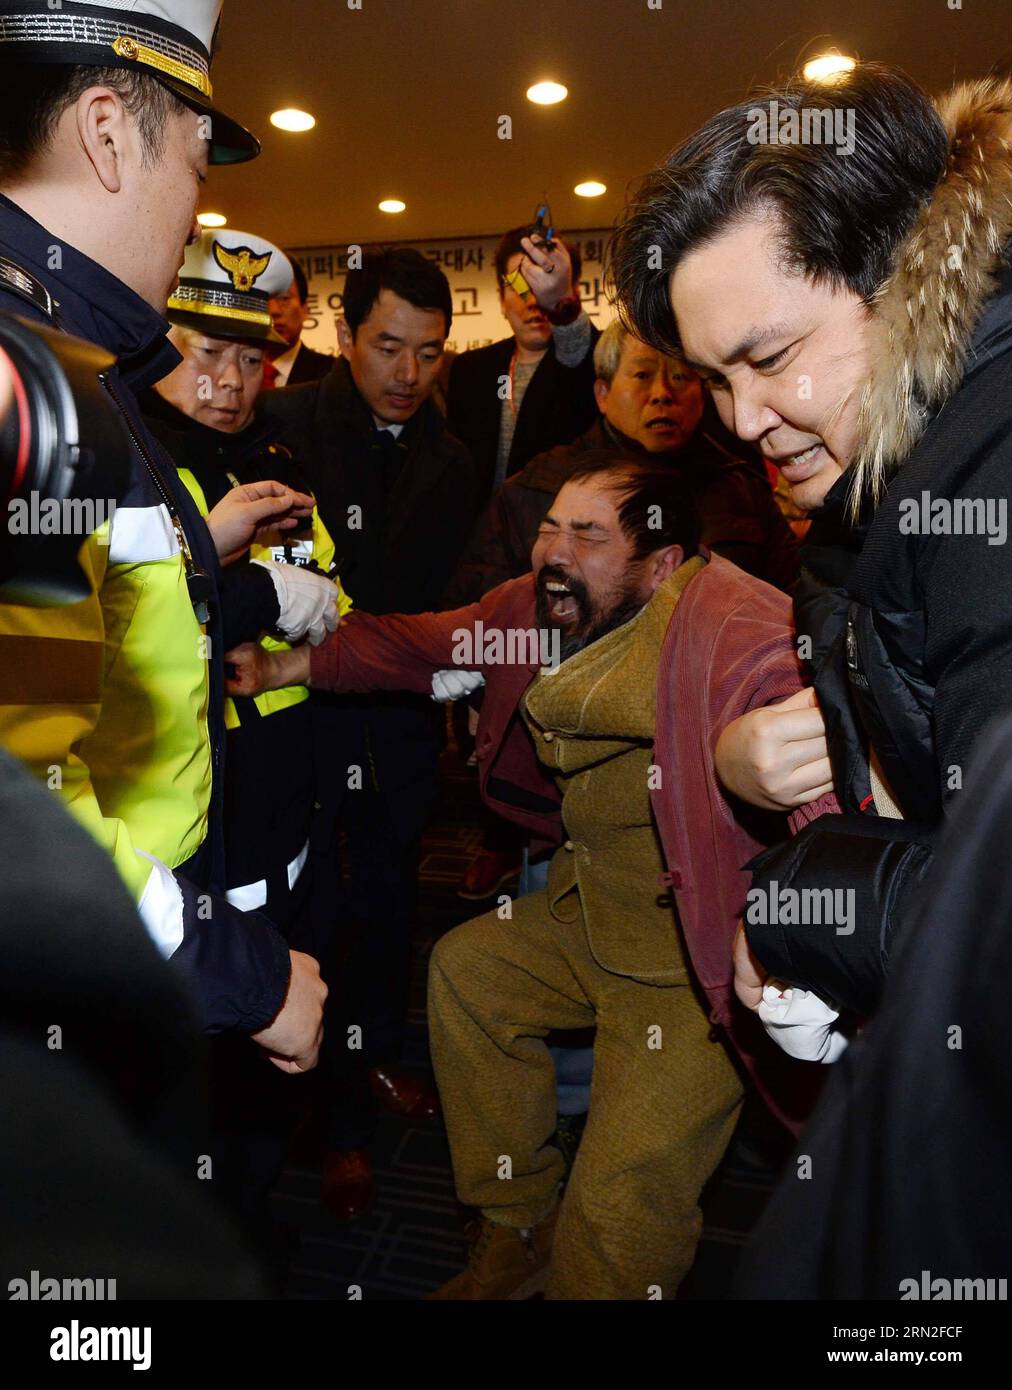 (150305) -- SÉOUL, le 5 mars 2015 -- la police arrête un homme qui a attaqué l'ambassadeur des États-Unis en Corée du Sud Mark Lippert à Séoul, Corée du Sud, le 5 mars 2015. L'ambassadeur des États-Unis en Corée du Sud Mark Lippert a été blessé jeudi à Séoul par un attaquant brandissant une lame, ont rapporté les médias locaux. CORÉE DU SUD-SÉOUL-ÉTATS-UNIS AMBASSADEUR-ATTAQUE Newsis PUBLICATIONxNOTxINxCHN Séoul Mars 5 2015 police un homme qui a attaqué l'ambassadeur des États-Unis en Corée du Sud Mark Lippert à Séoul Corée du Sud Mars 5 2015 Ambassadeur des États-Unis en Corée du Sud Mark Lippert ce qui a été blessé par une lame brandissant jeudi à Séoul les médias locaux ont rapporté South Kor Banque D'Images